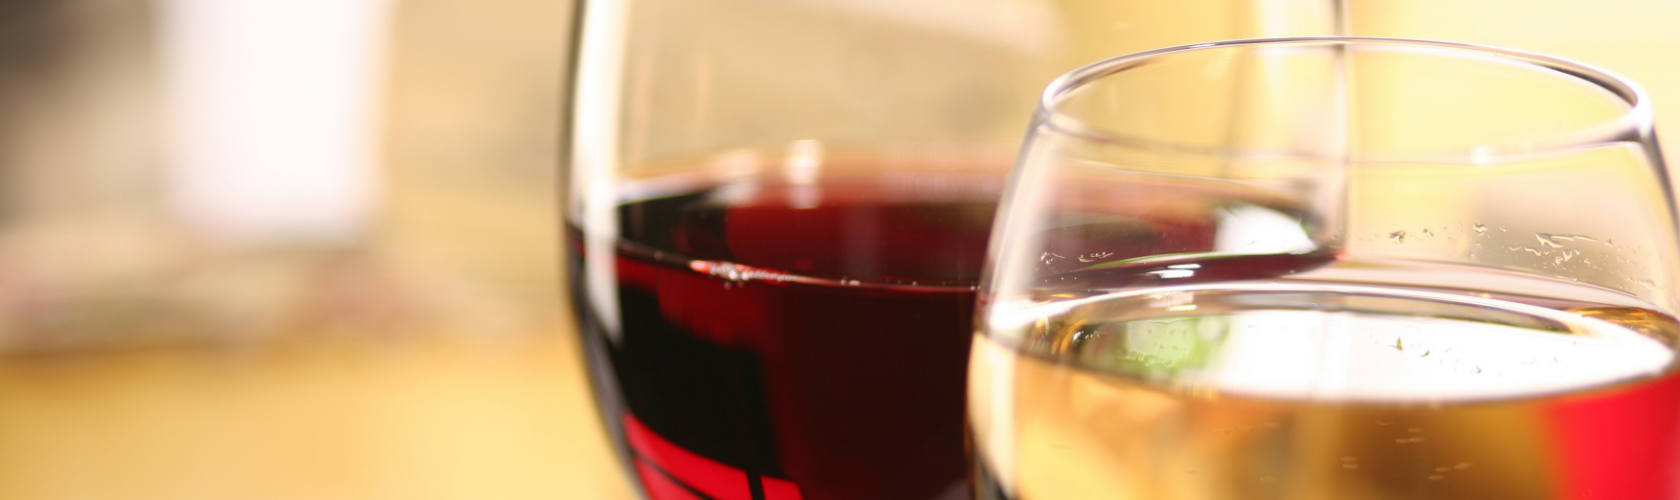 Pesquisa confirma que uma taça de vinho previne câncer